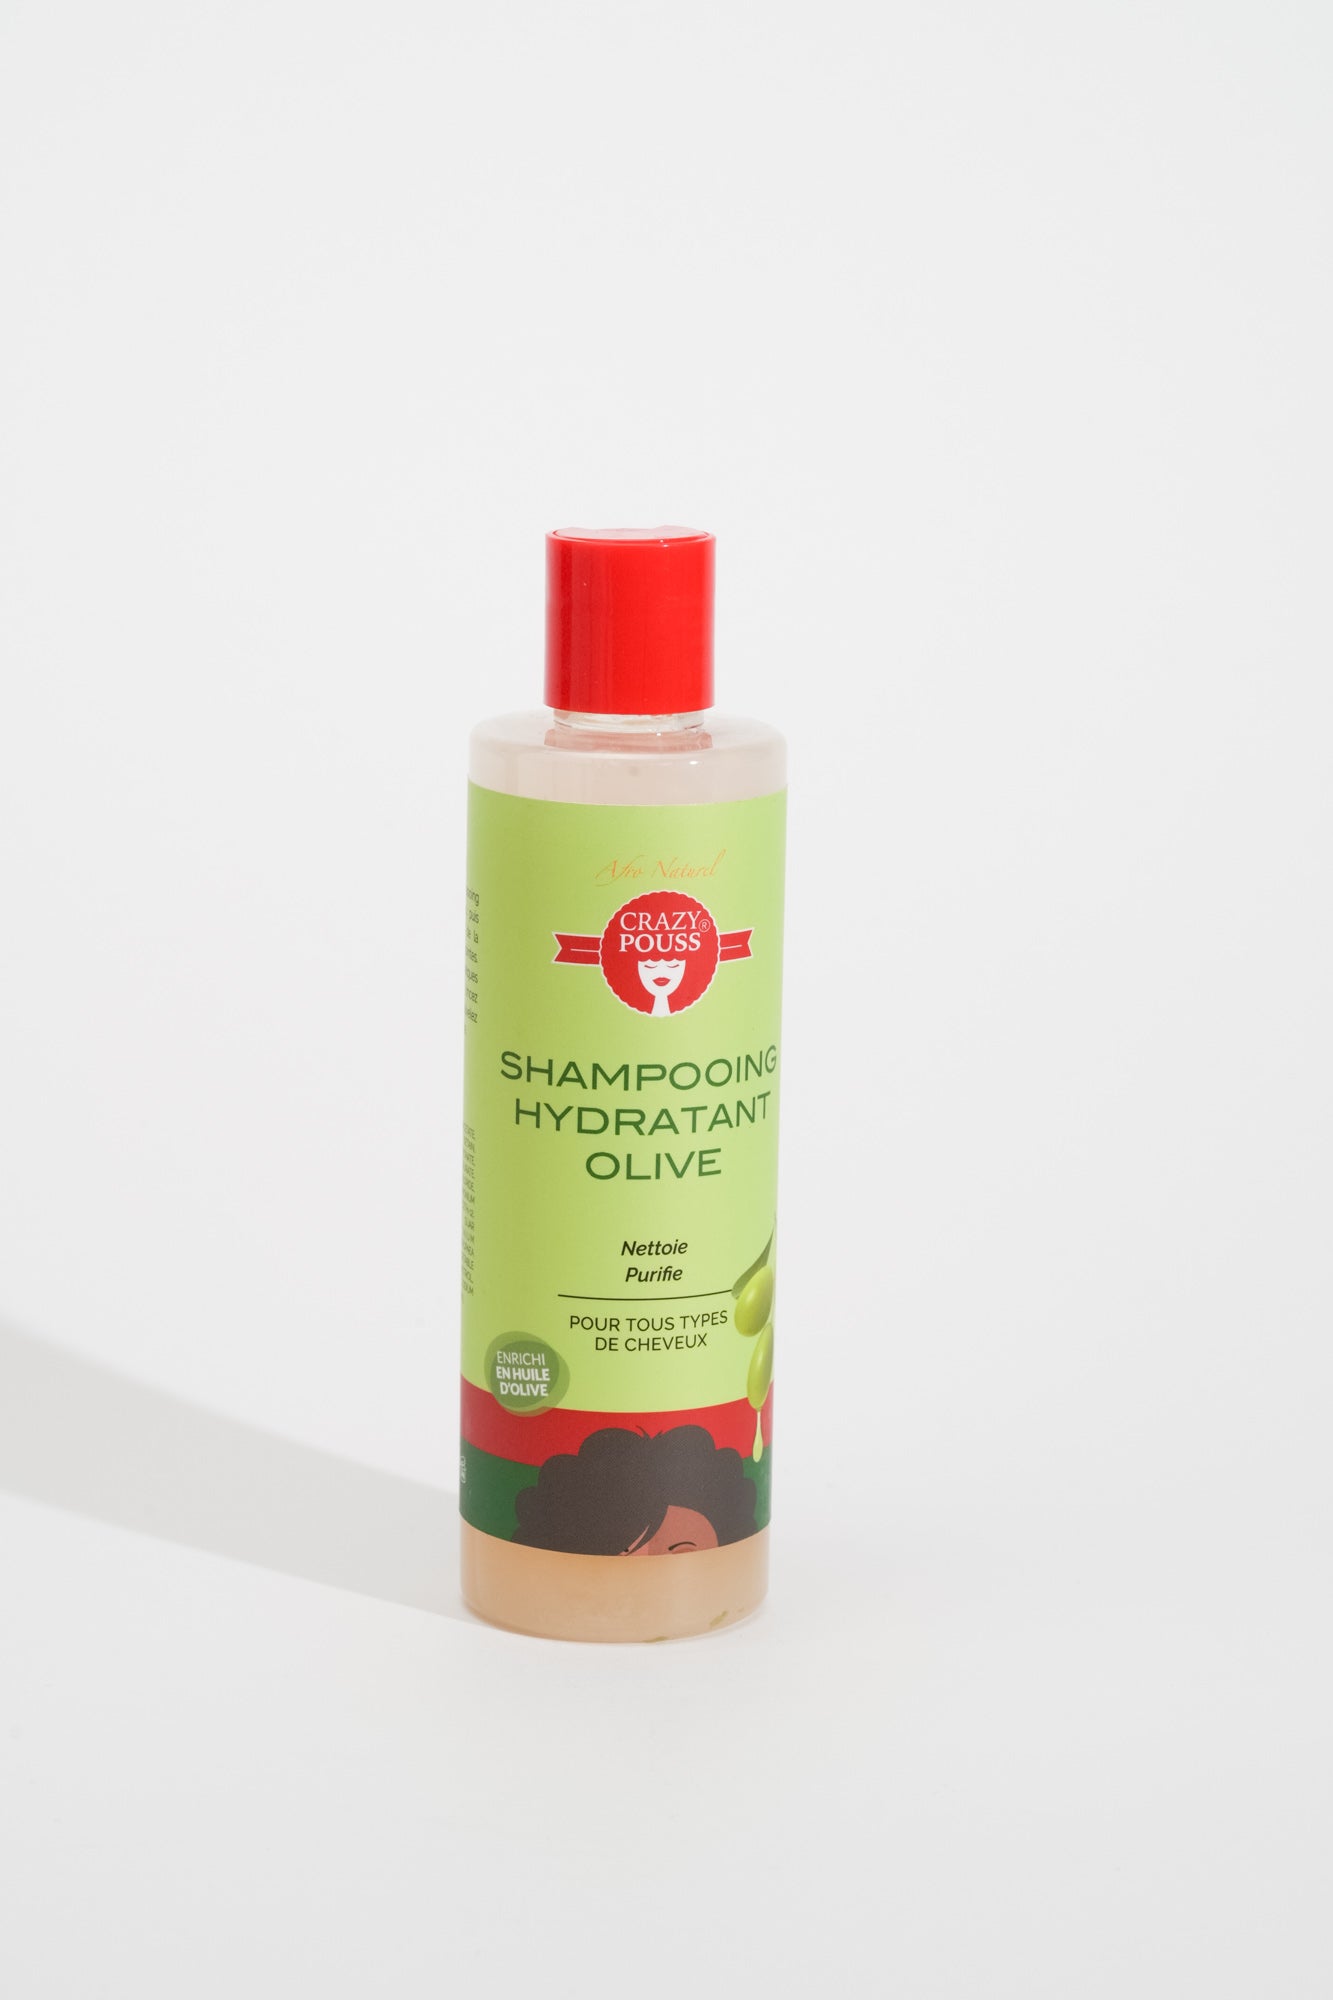 CRAZY POUSS - Shampooing hydratant olive pour prendre soin de vos cheveux